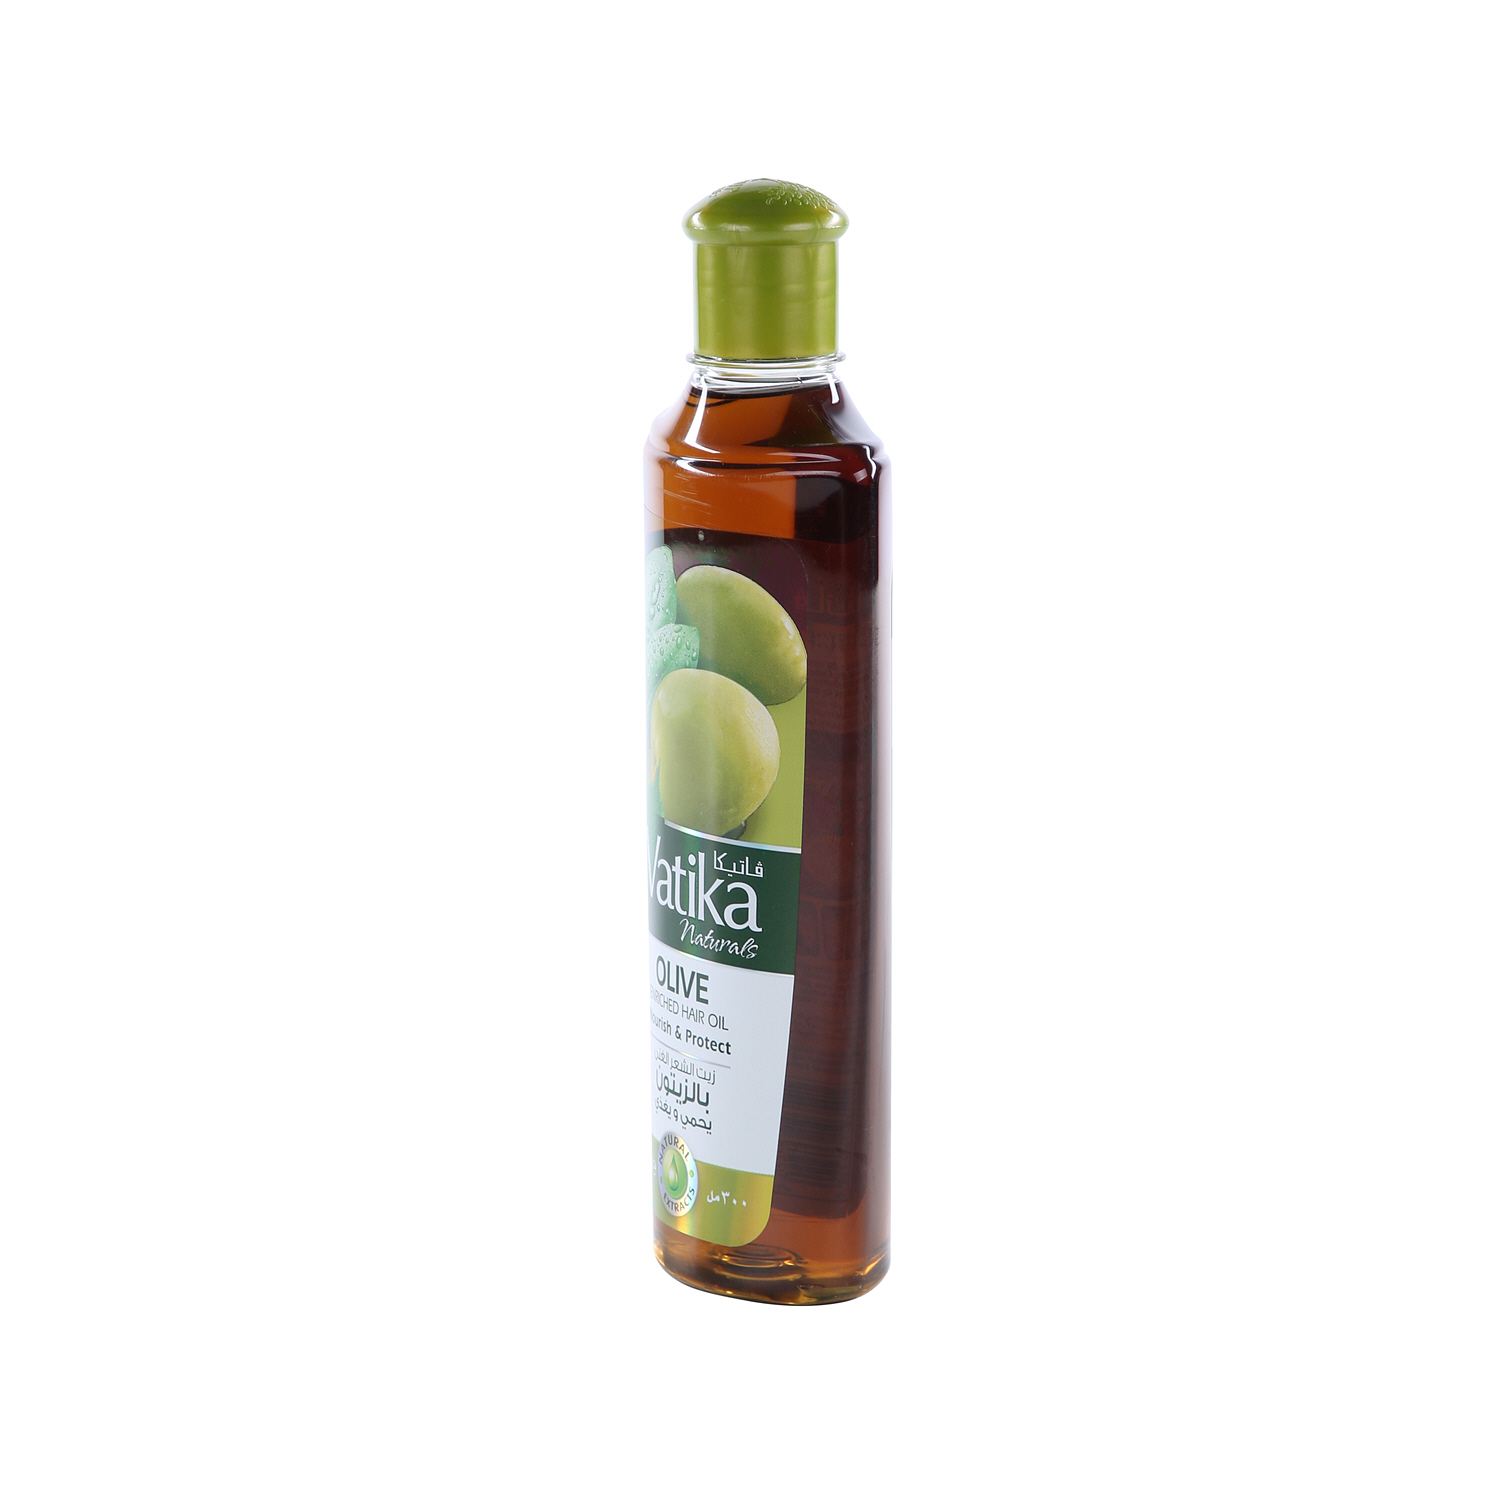 Dabur Vatika Olive Hair Oil 300ml